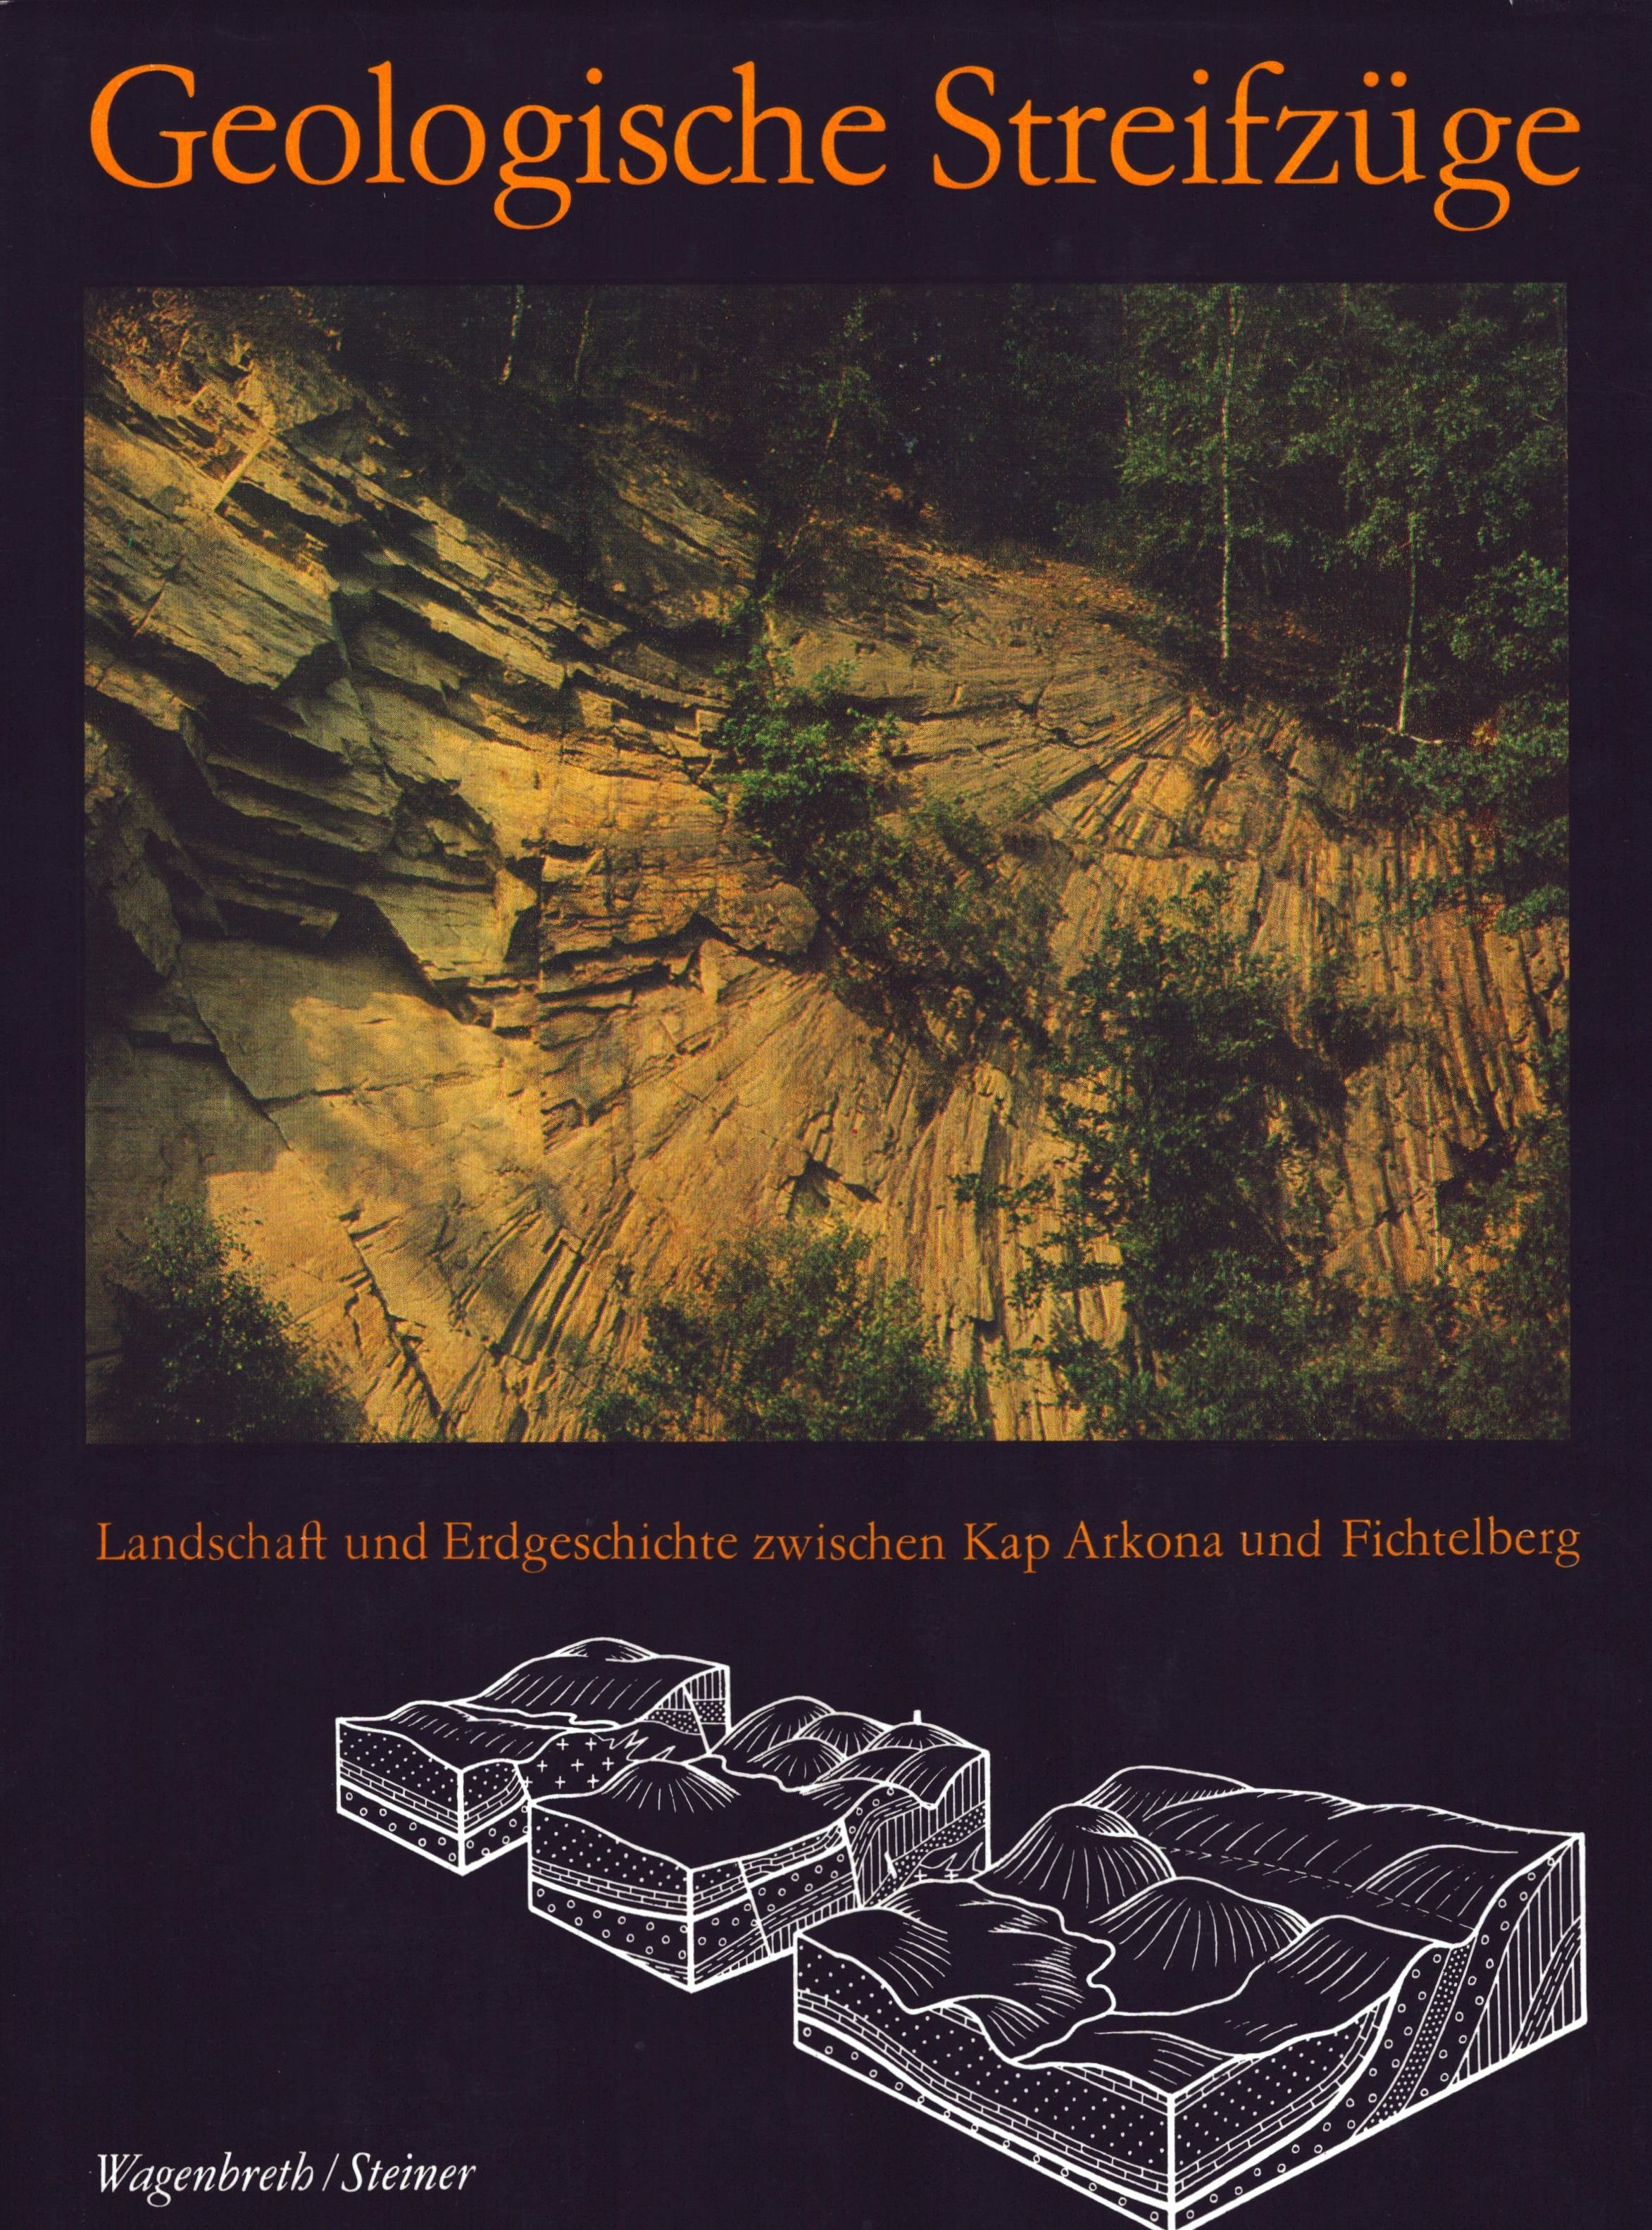 Geologische Streifzüge - Landschaft und Erdgeschichte zwischen Kap Arkona und Fichtelberg (Archiv SAXONIA-FREIBERG-STIFTUNG CC BY-NC-SA)